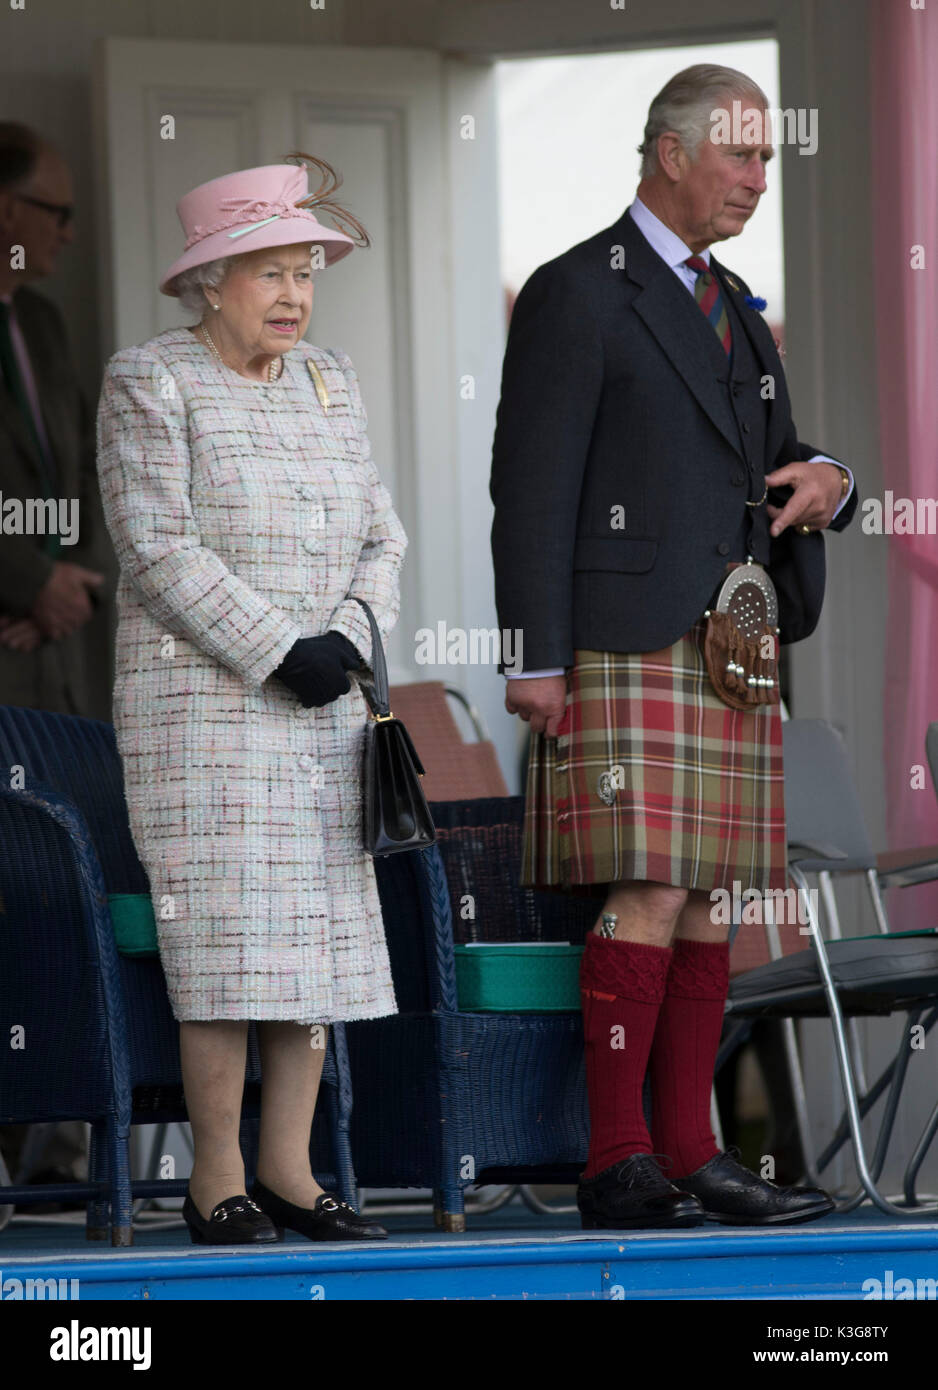 London, Großbritannien. 3. Sep 2017. Die britische Königin Elizabeth II. besucht die 2017 Braemar Gathering, eine jährliche traditionelle Schottische Highland Games in Braemar, Schottland, Sept. 2, 2017. Quelle: Xinhua/Alamy leben Nachrichten Stockfoto